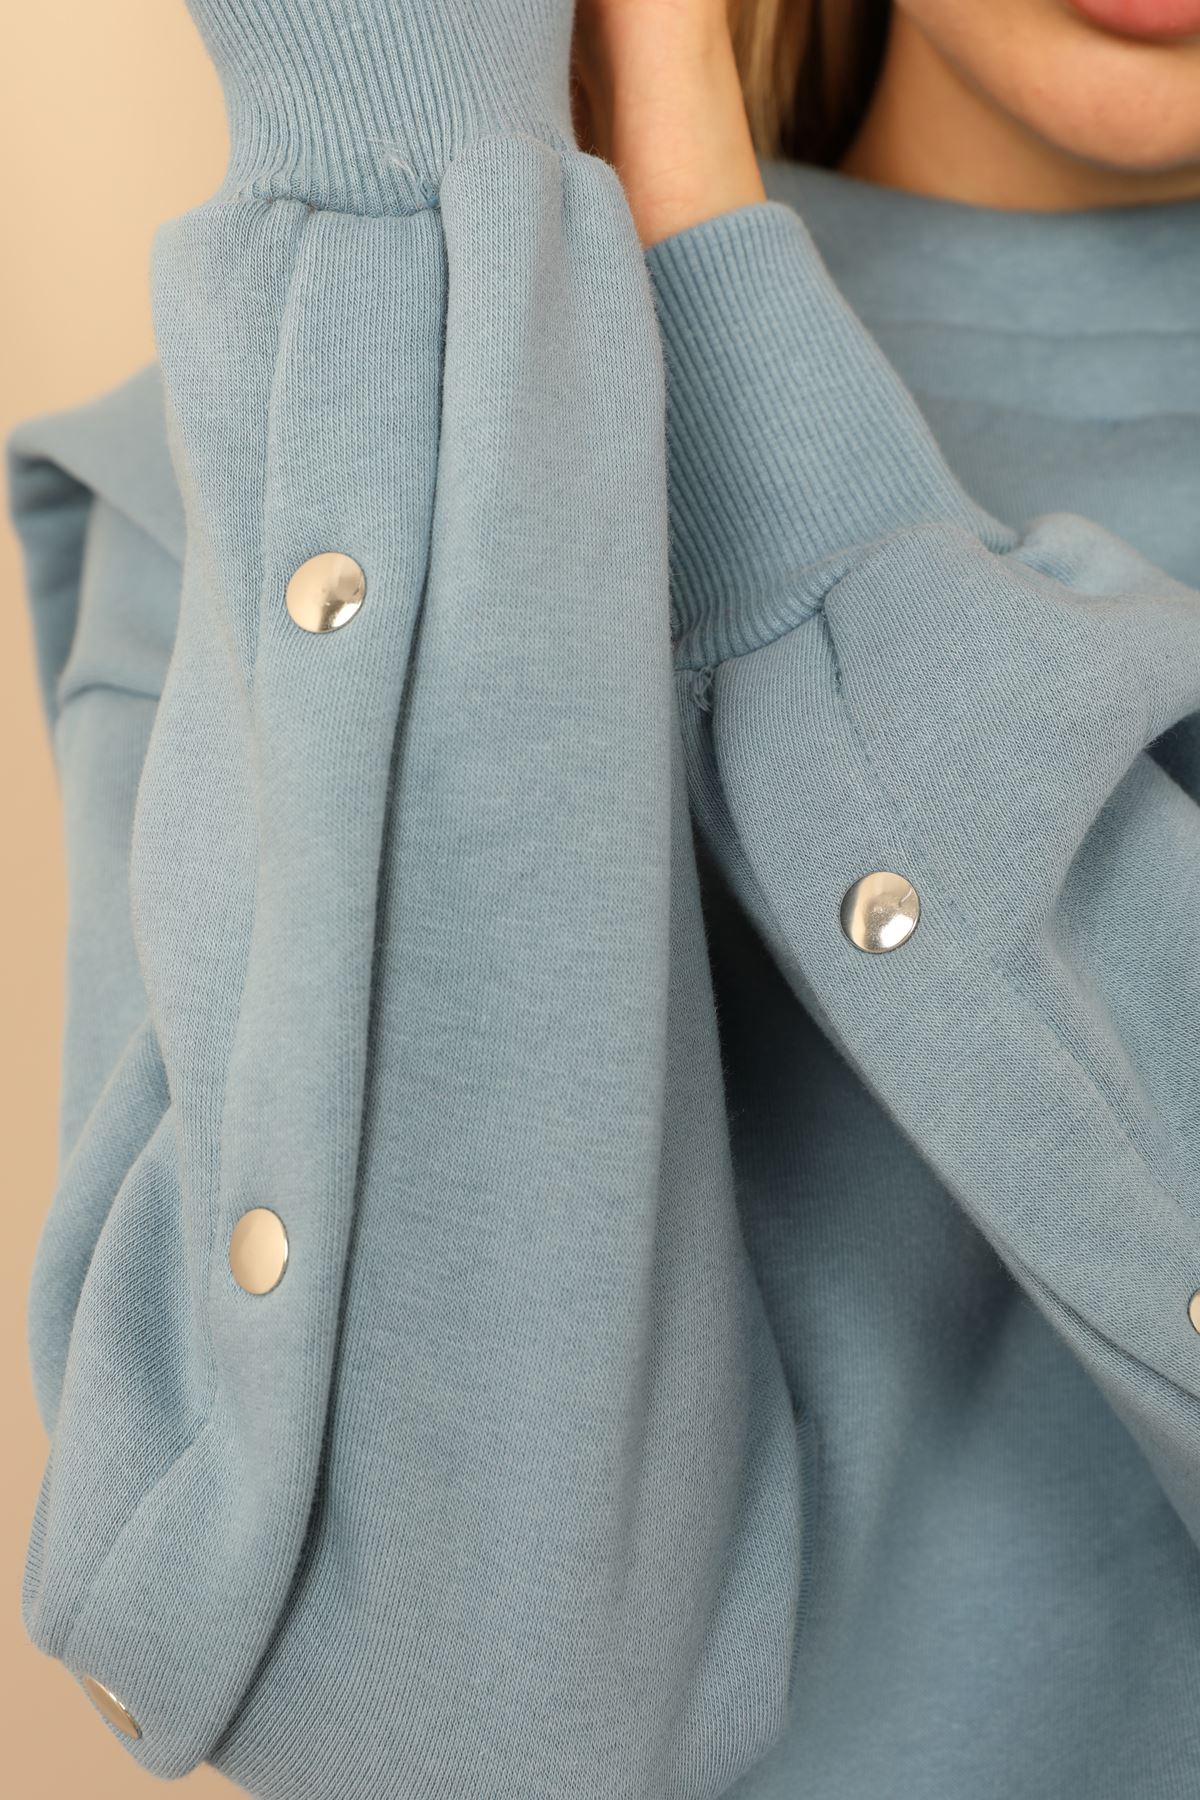 Thread Knit FabricLong Sleeve Hooded Hip Height Oversize Women'S Set 2 Pieces - Light Blue